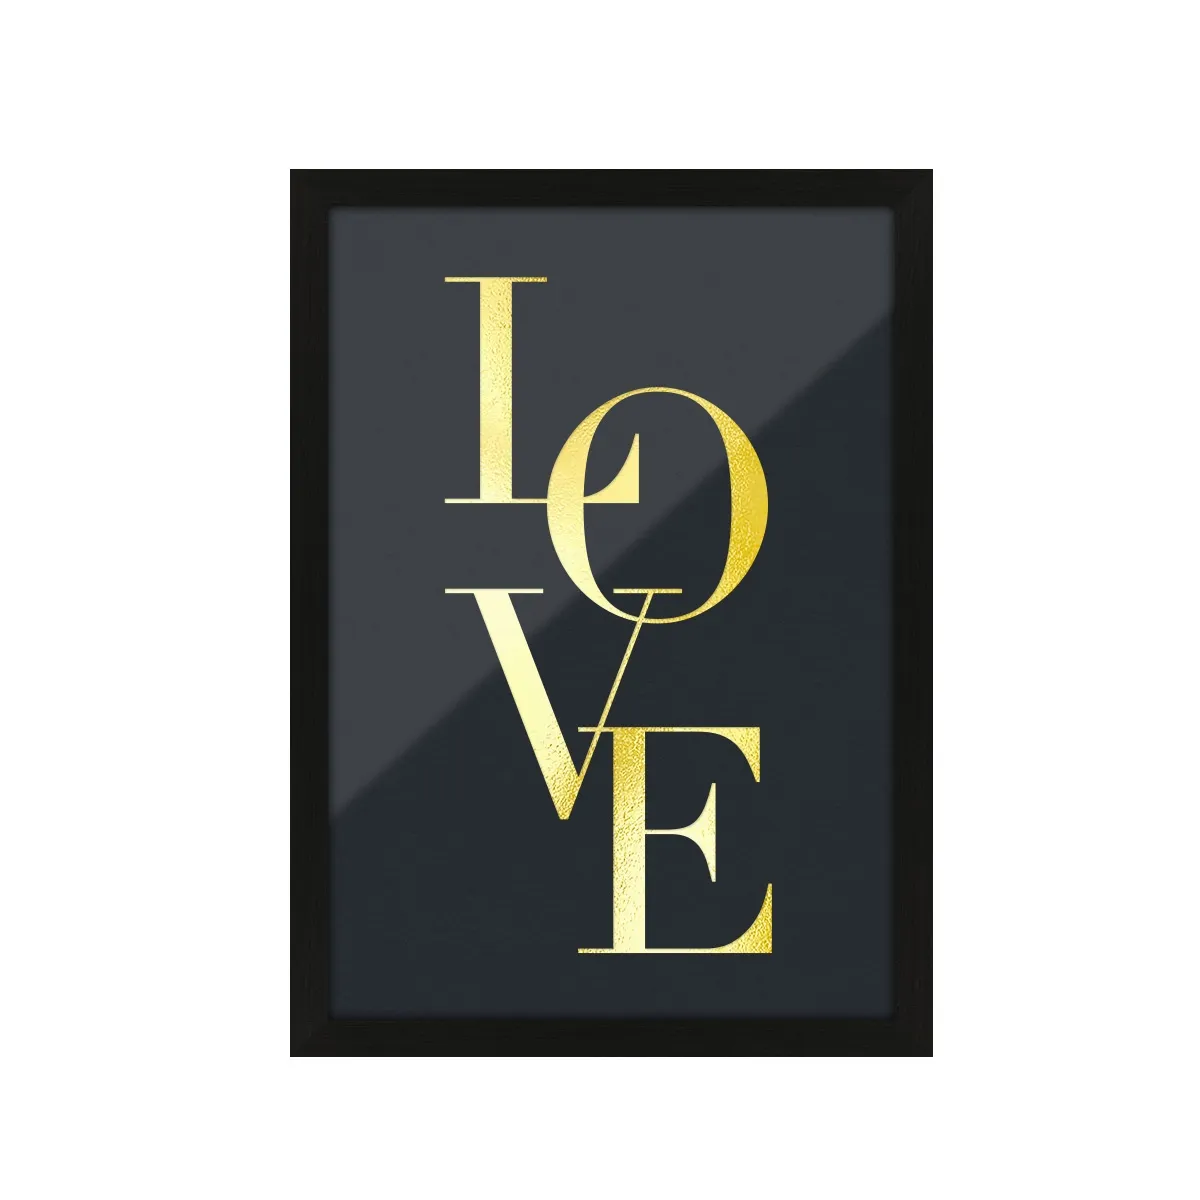 Kunstdruck Poster mit Heißfolienprägung - Love